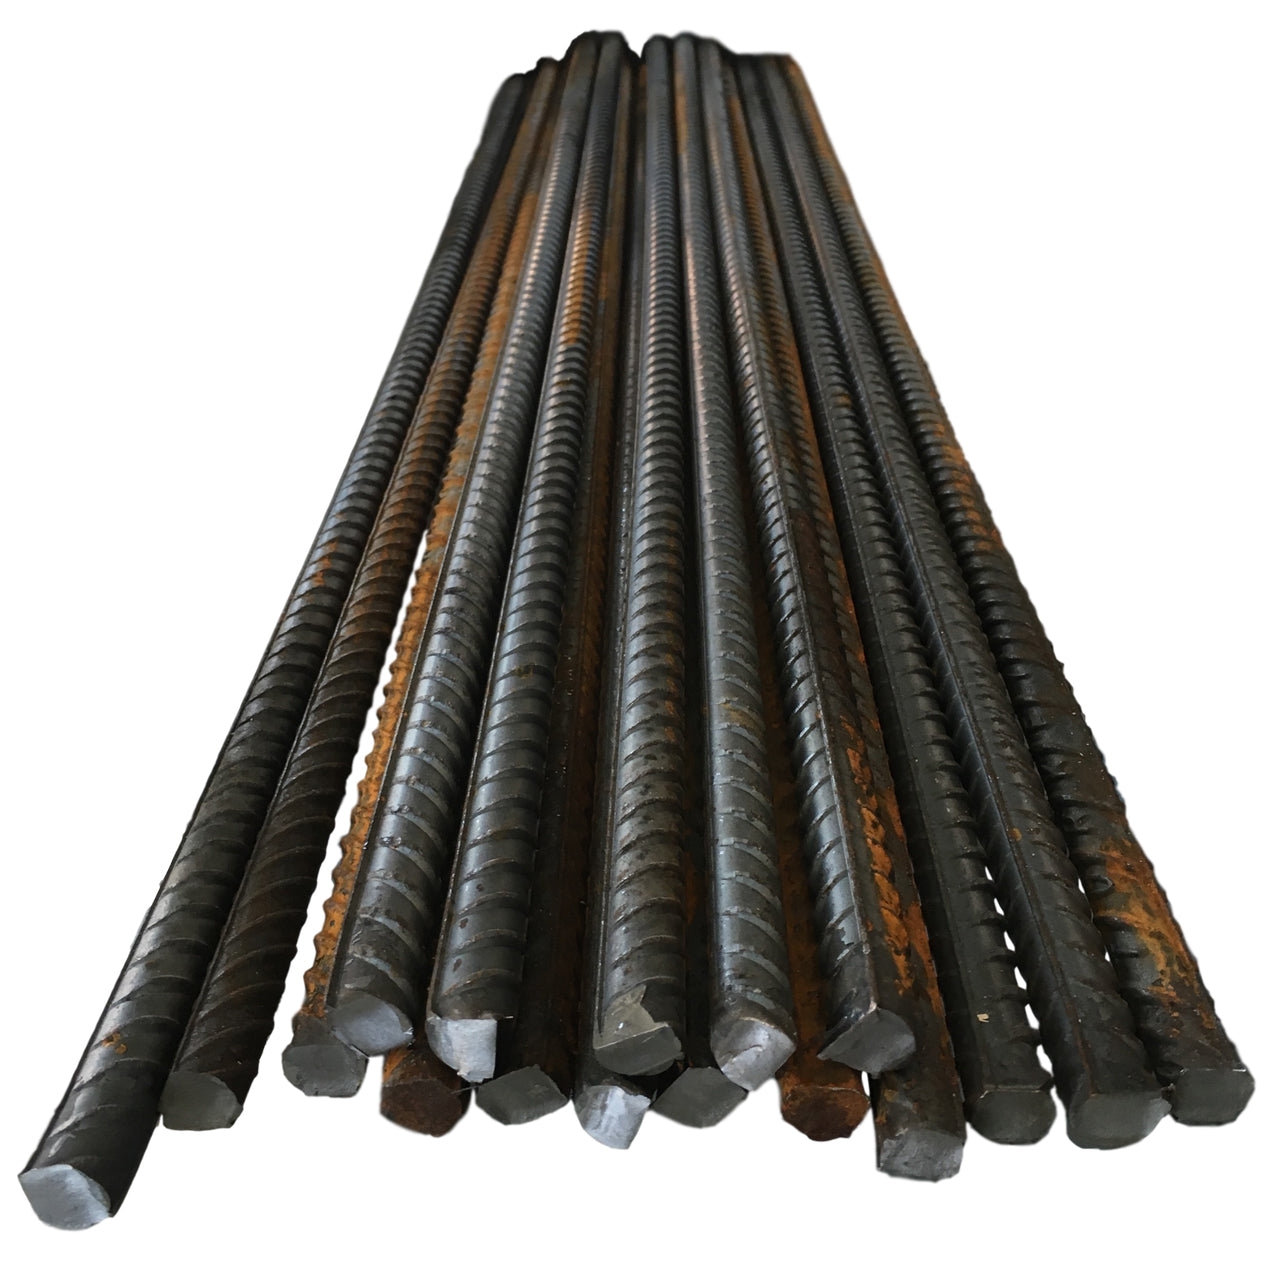 Reinforcing Steel Bar – Rebar – 12mm x 450mm – Site Equipment – Just The Job Supplies